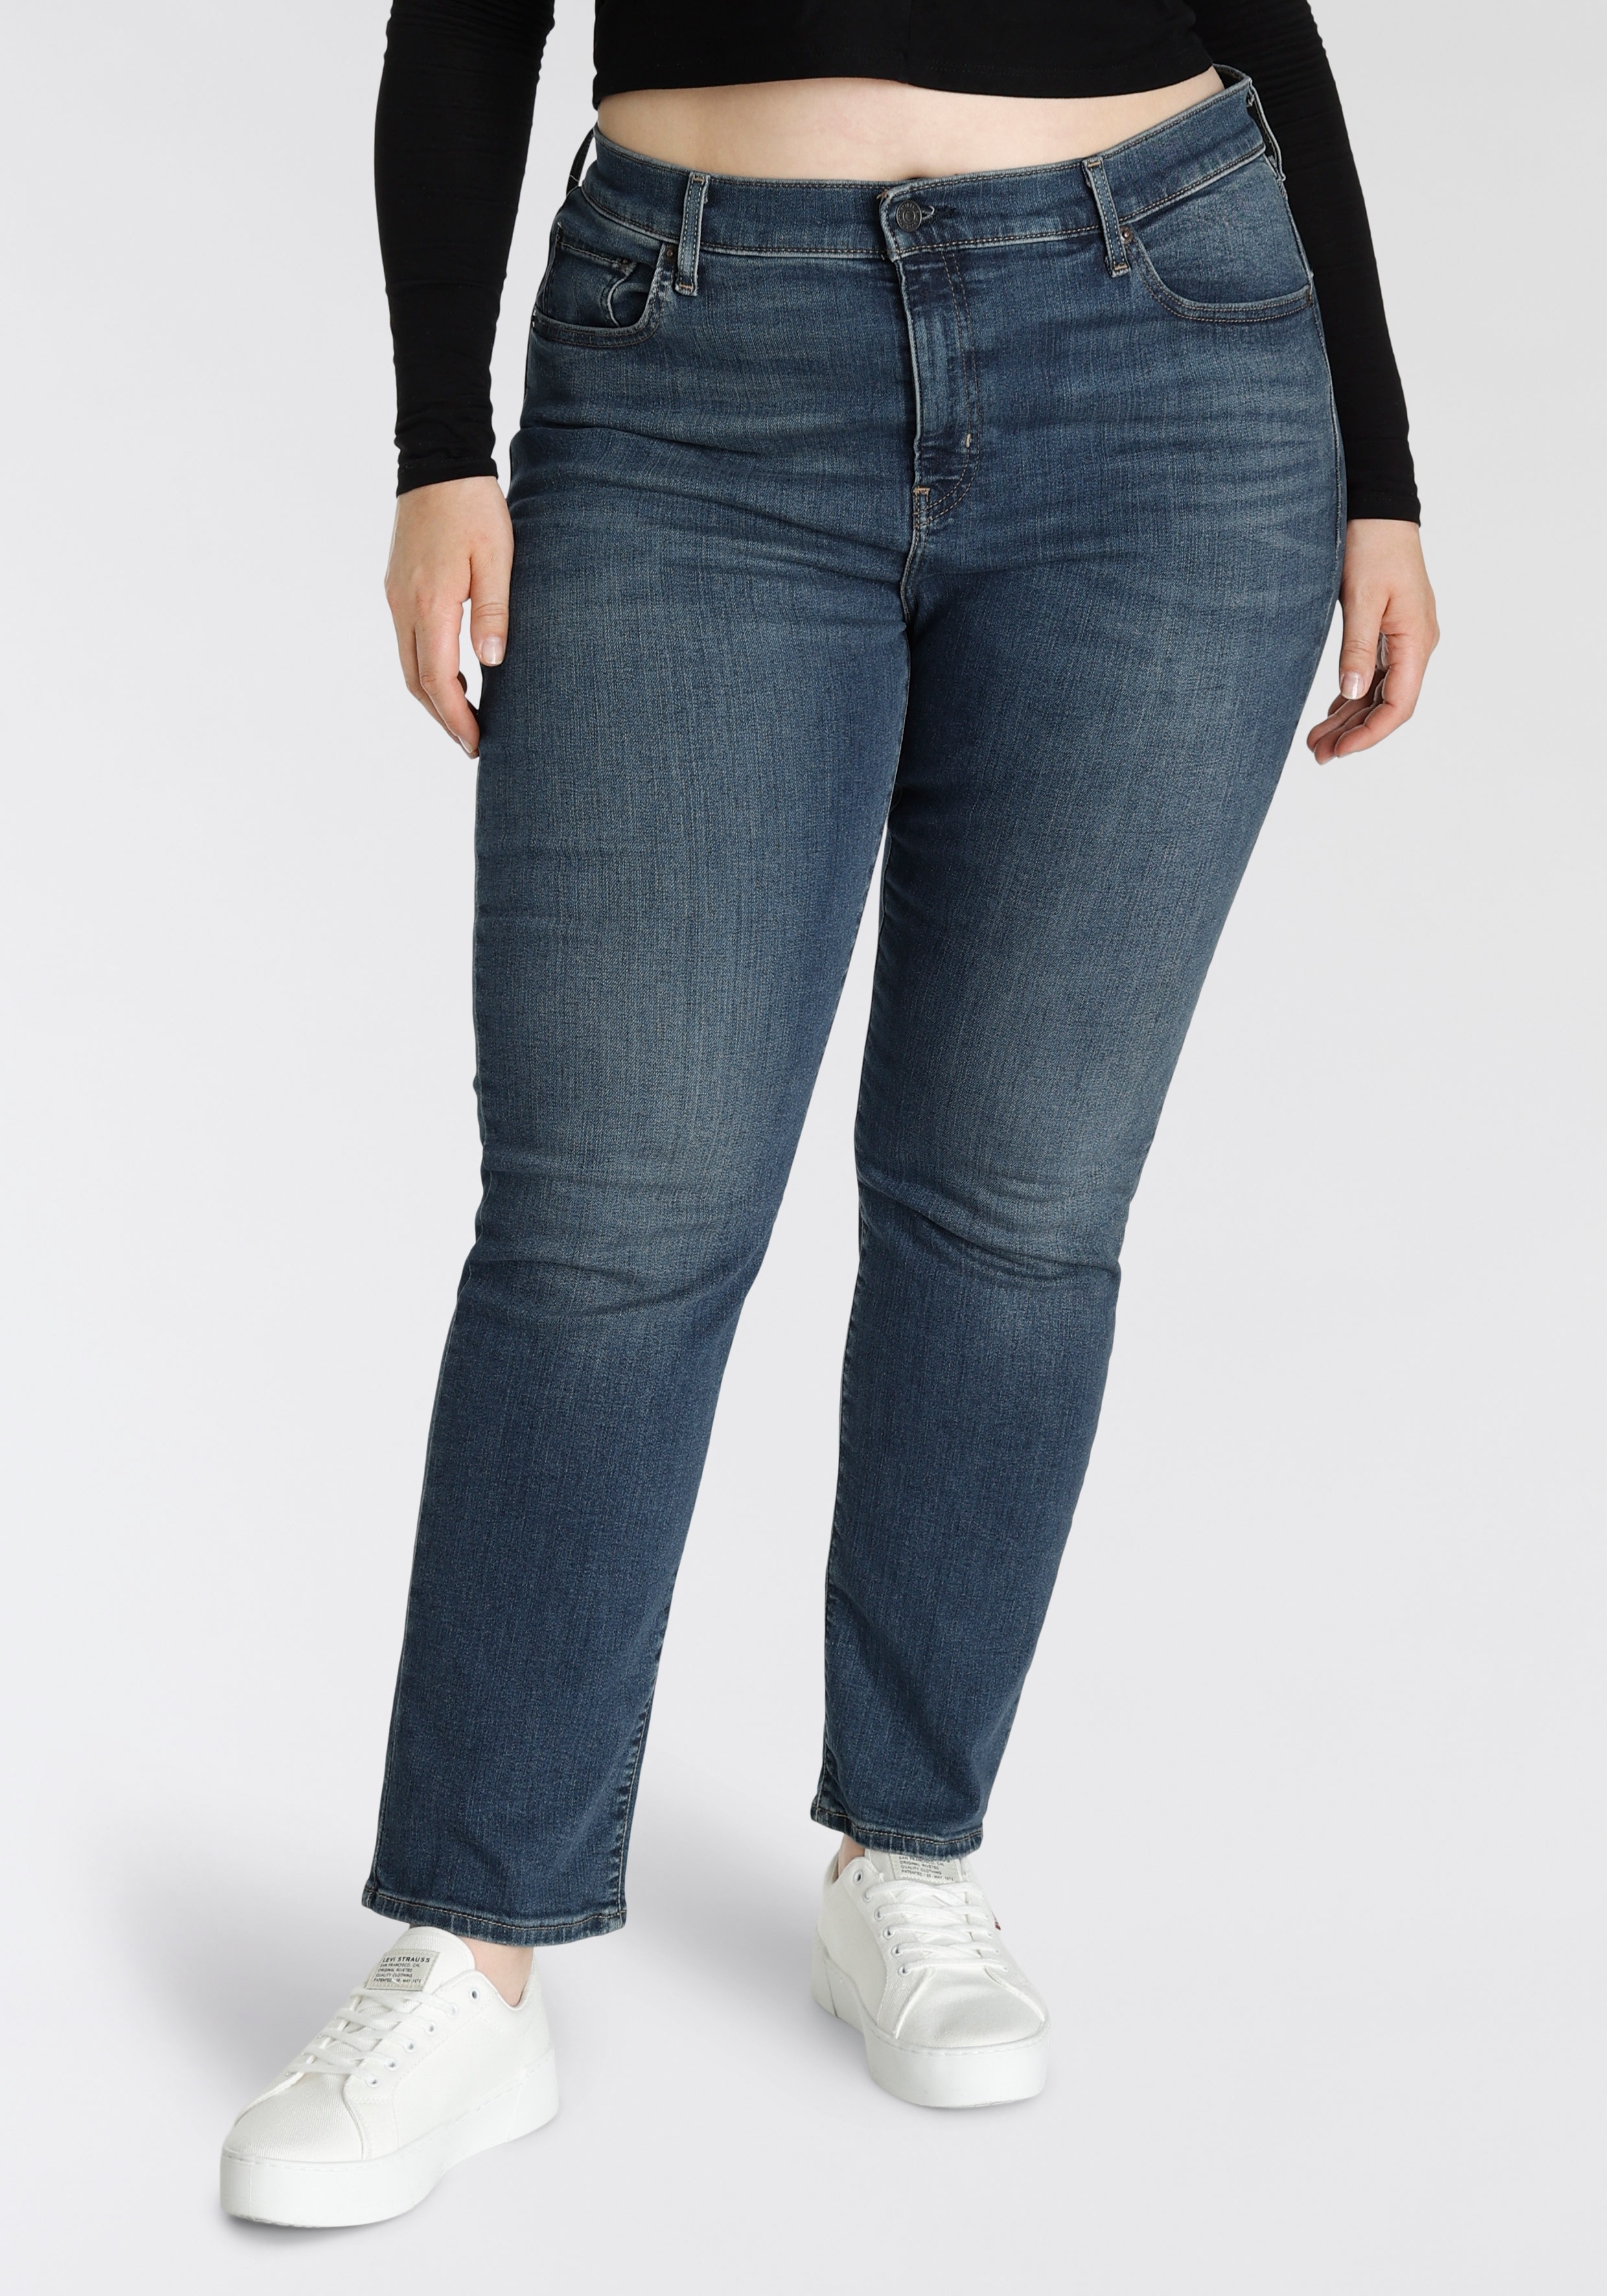 Straight-Jeans LEVI'S PLUS "724 PL HR STRAIGHT" Gr. 14 (44), Länge 32, blau (dark indigo worn in) Damen Jeans Gerade